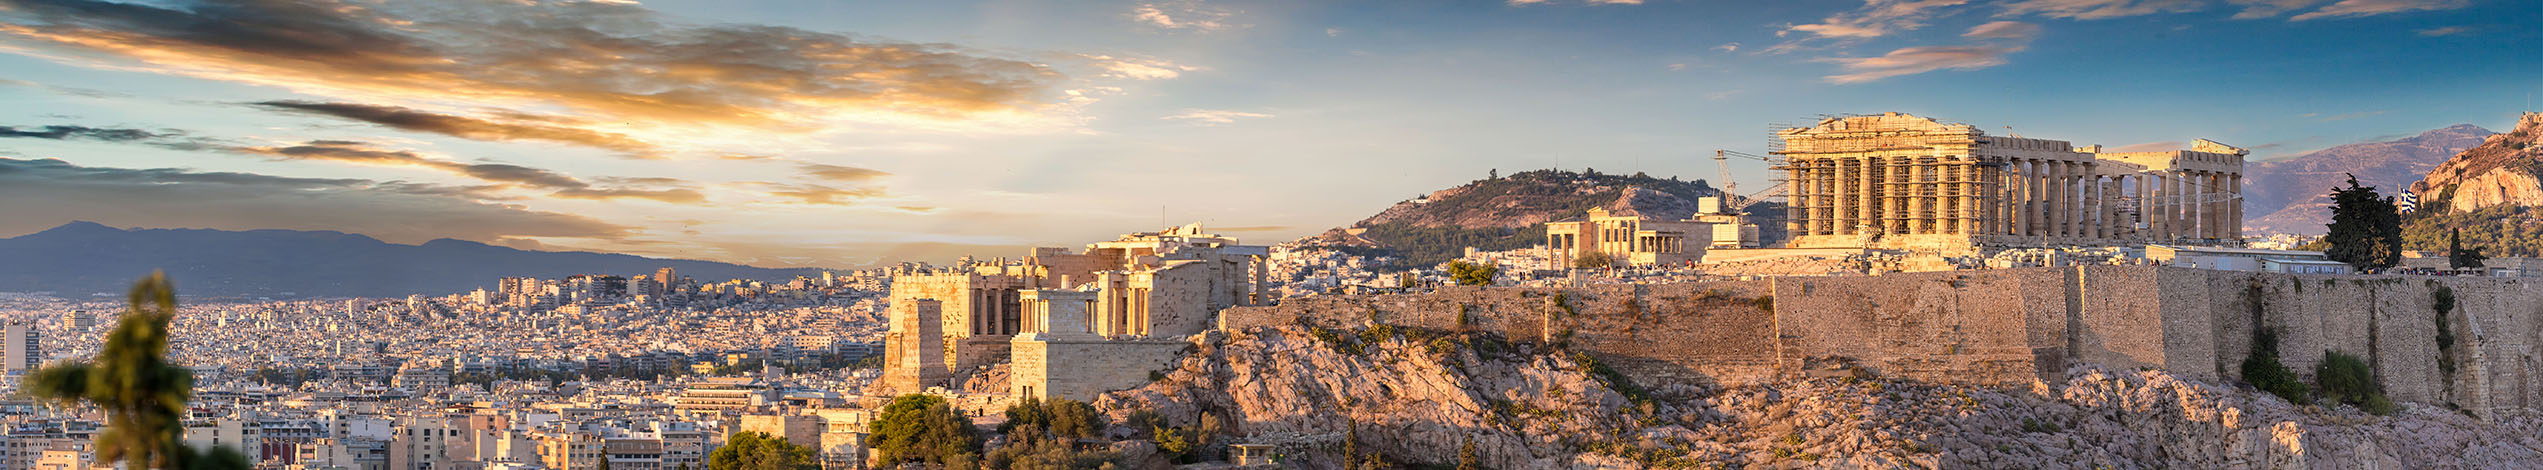 Studieresa till Grekland - Aten